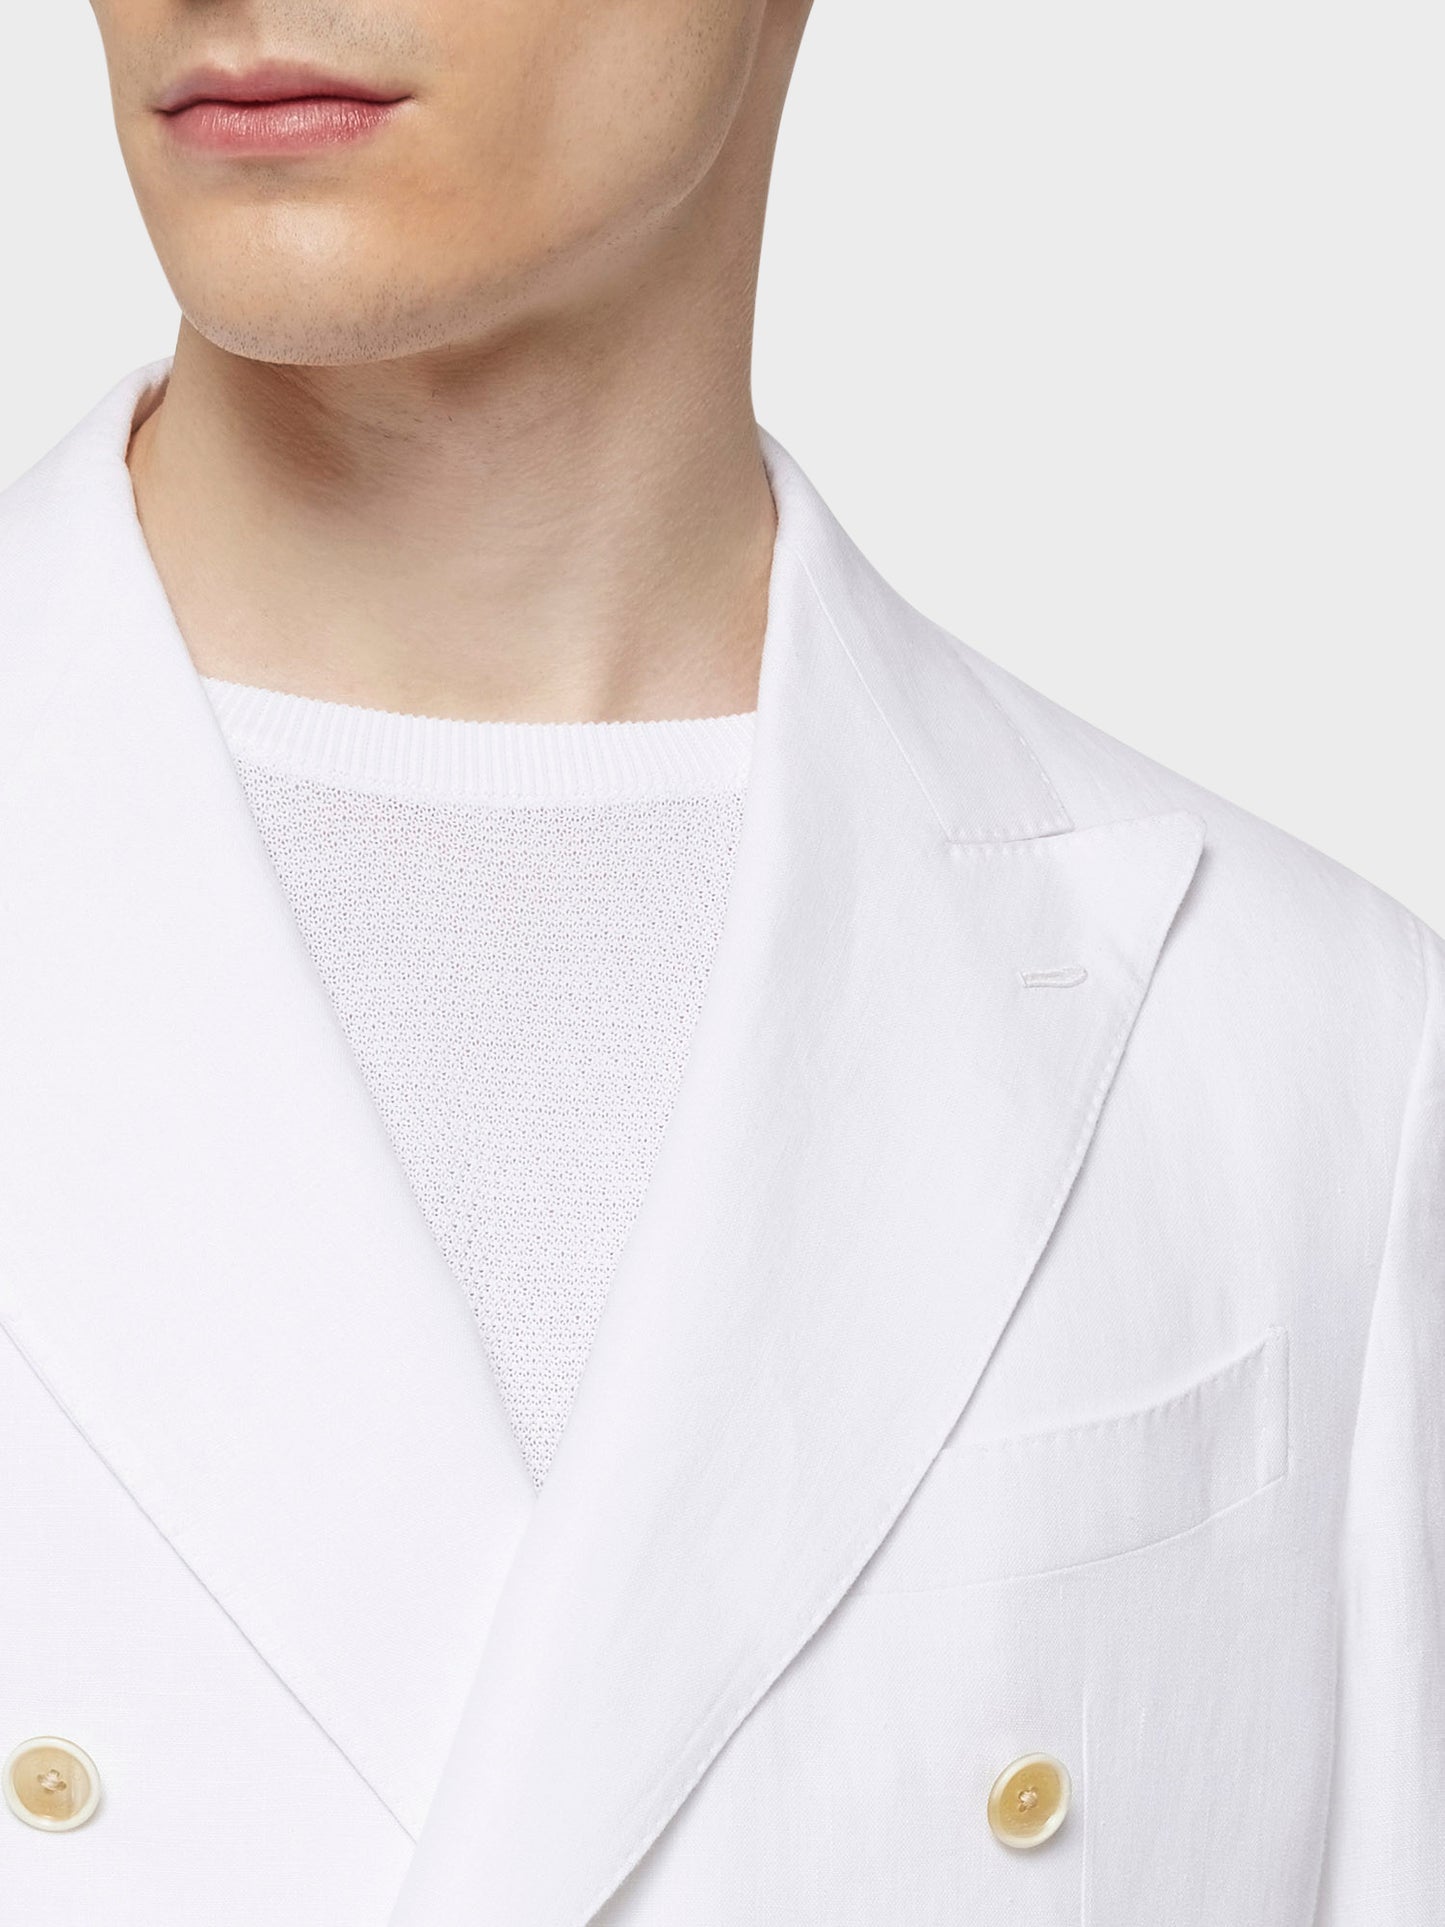 Caruso Menswear Abbigliamento Uomo Giacca aida doppiopetto in lino bianca dettaglio